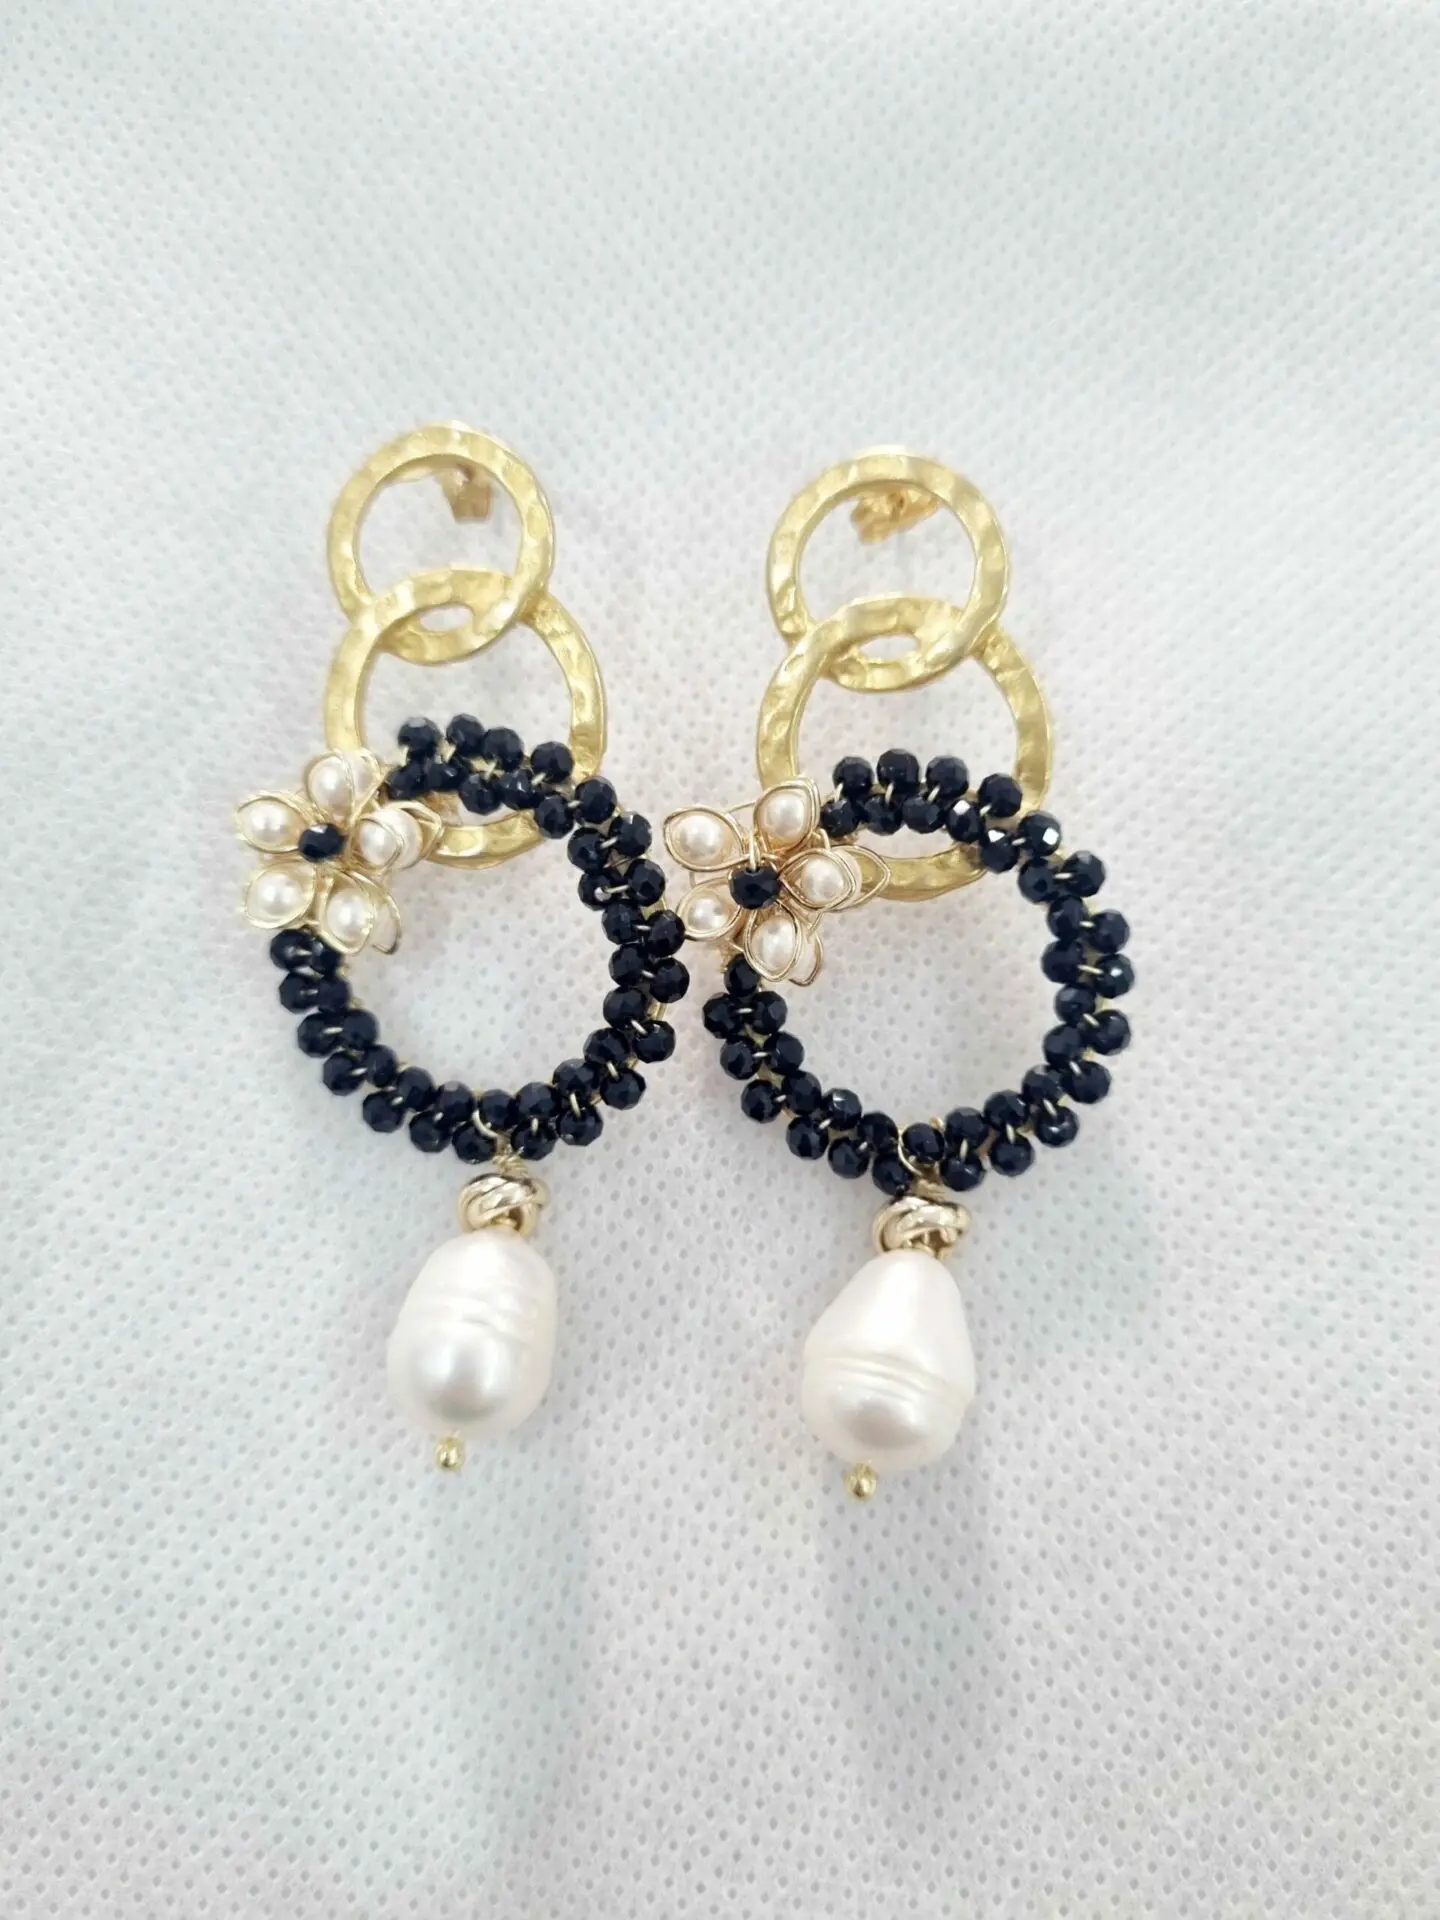 Handgefertigte Ohrringe aus Messing, Kristallen, Barockperlen und mallorquinischen Perlen. Länge 7 cm, Gewicht 8,6 g